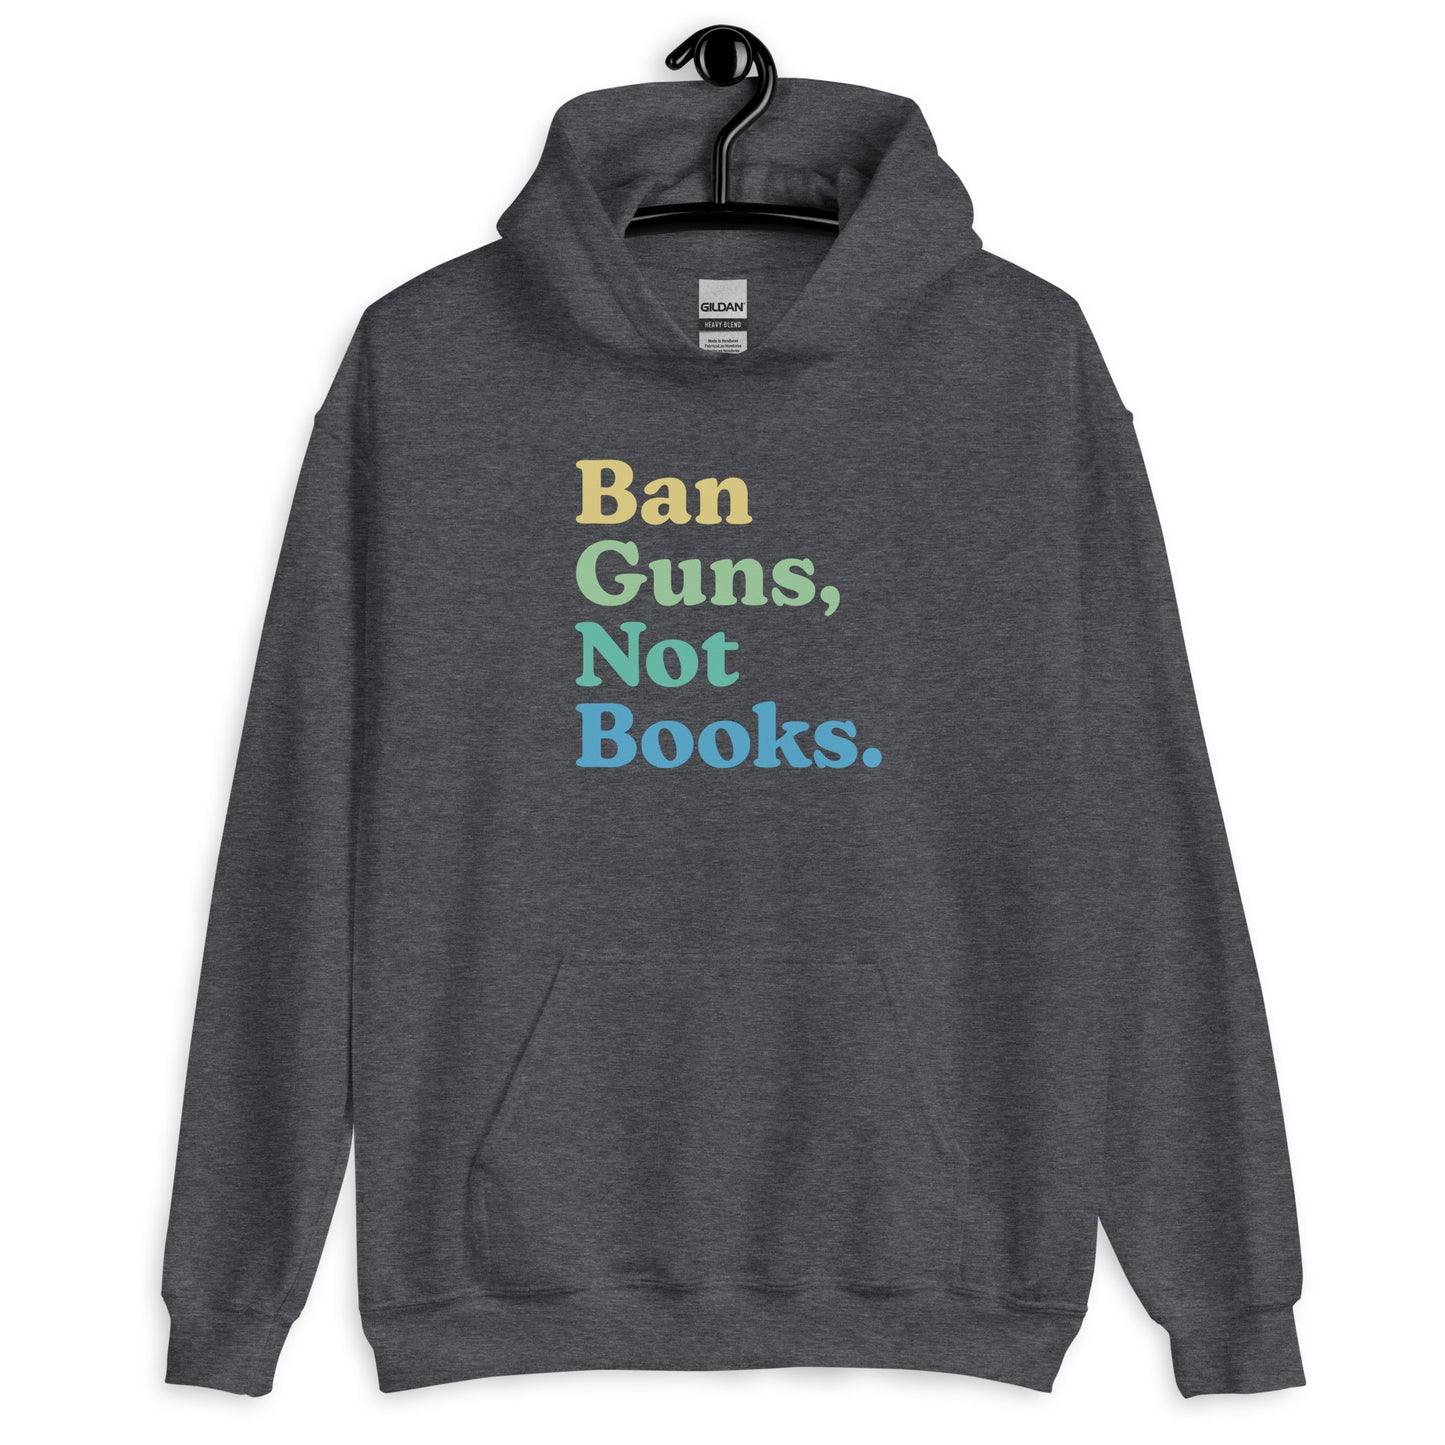 Ban Guns Not Books - Hooded Sweatshirt